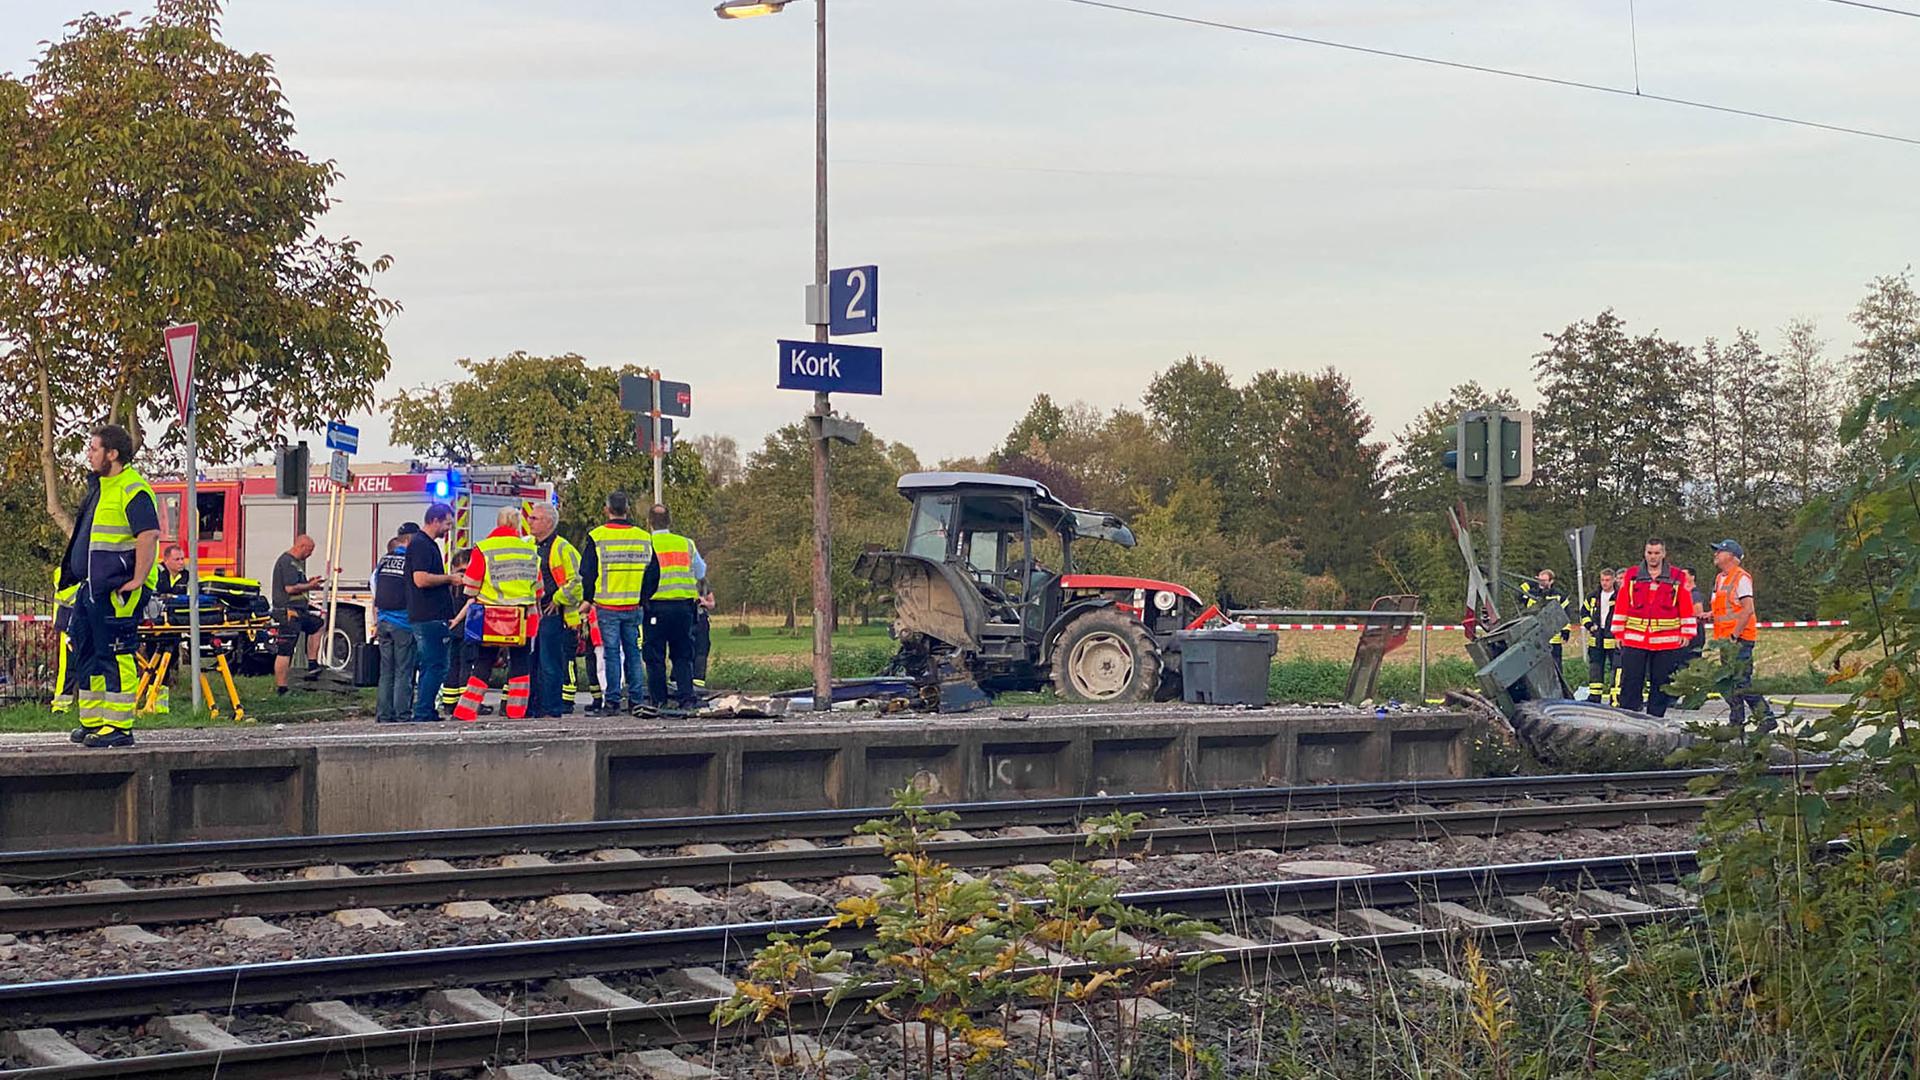 Ein beschädigter Traktor und Rettungskräfte stehen am Bahnhof Kork, einem Stadtteil von Kehl. Laut Polizei ist der Traktor auf dem Bahnübergang liegengeblieben.